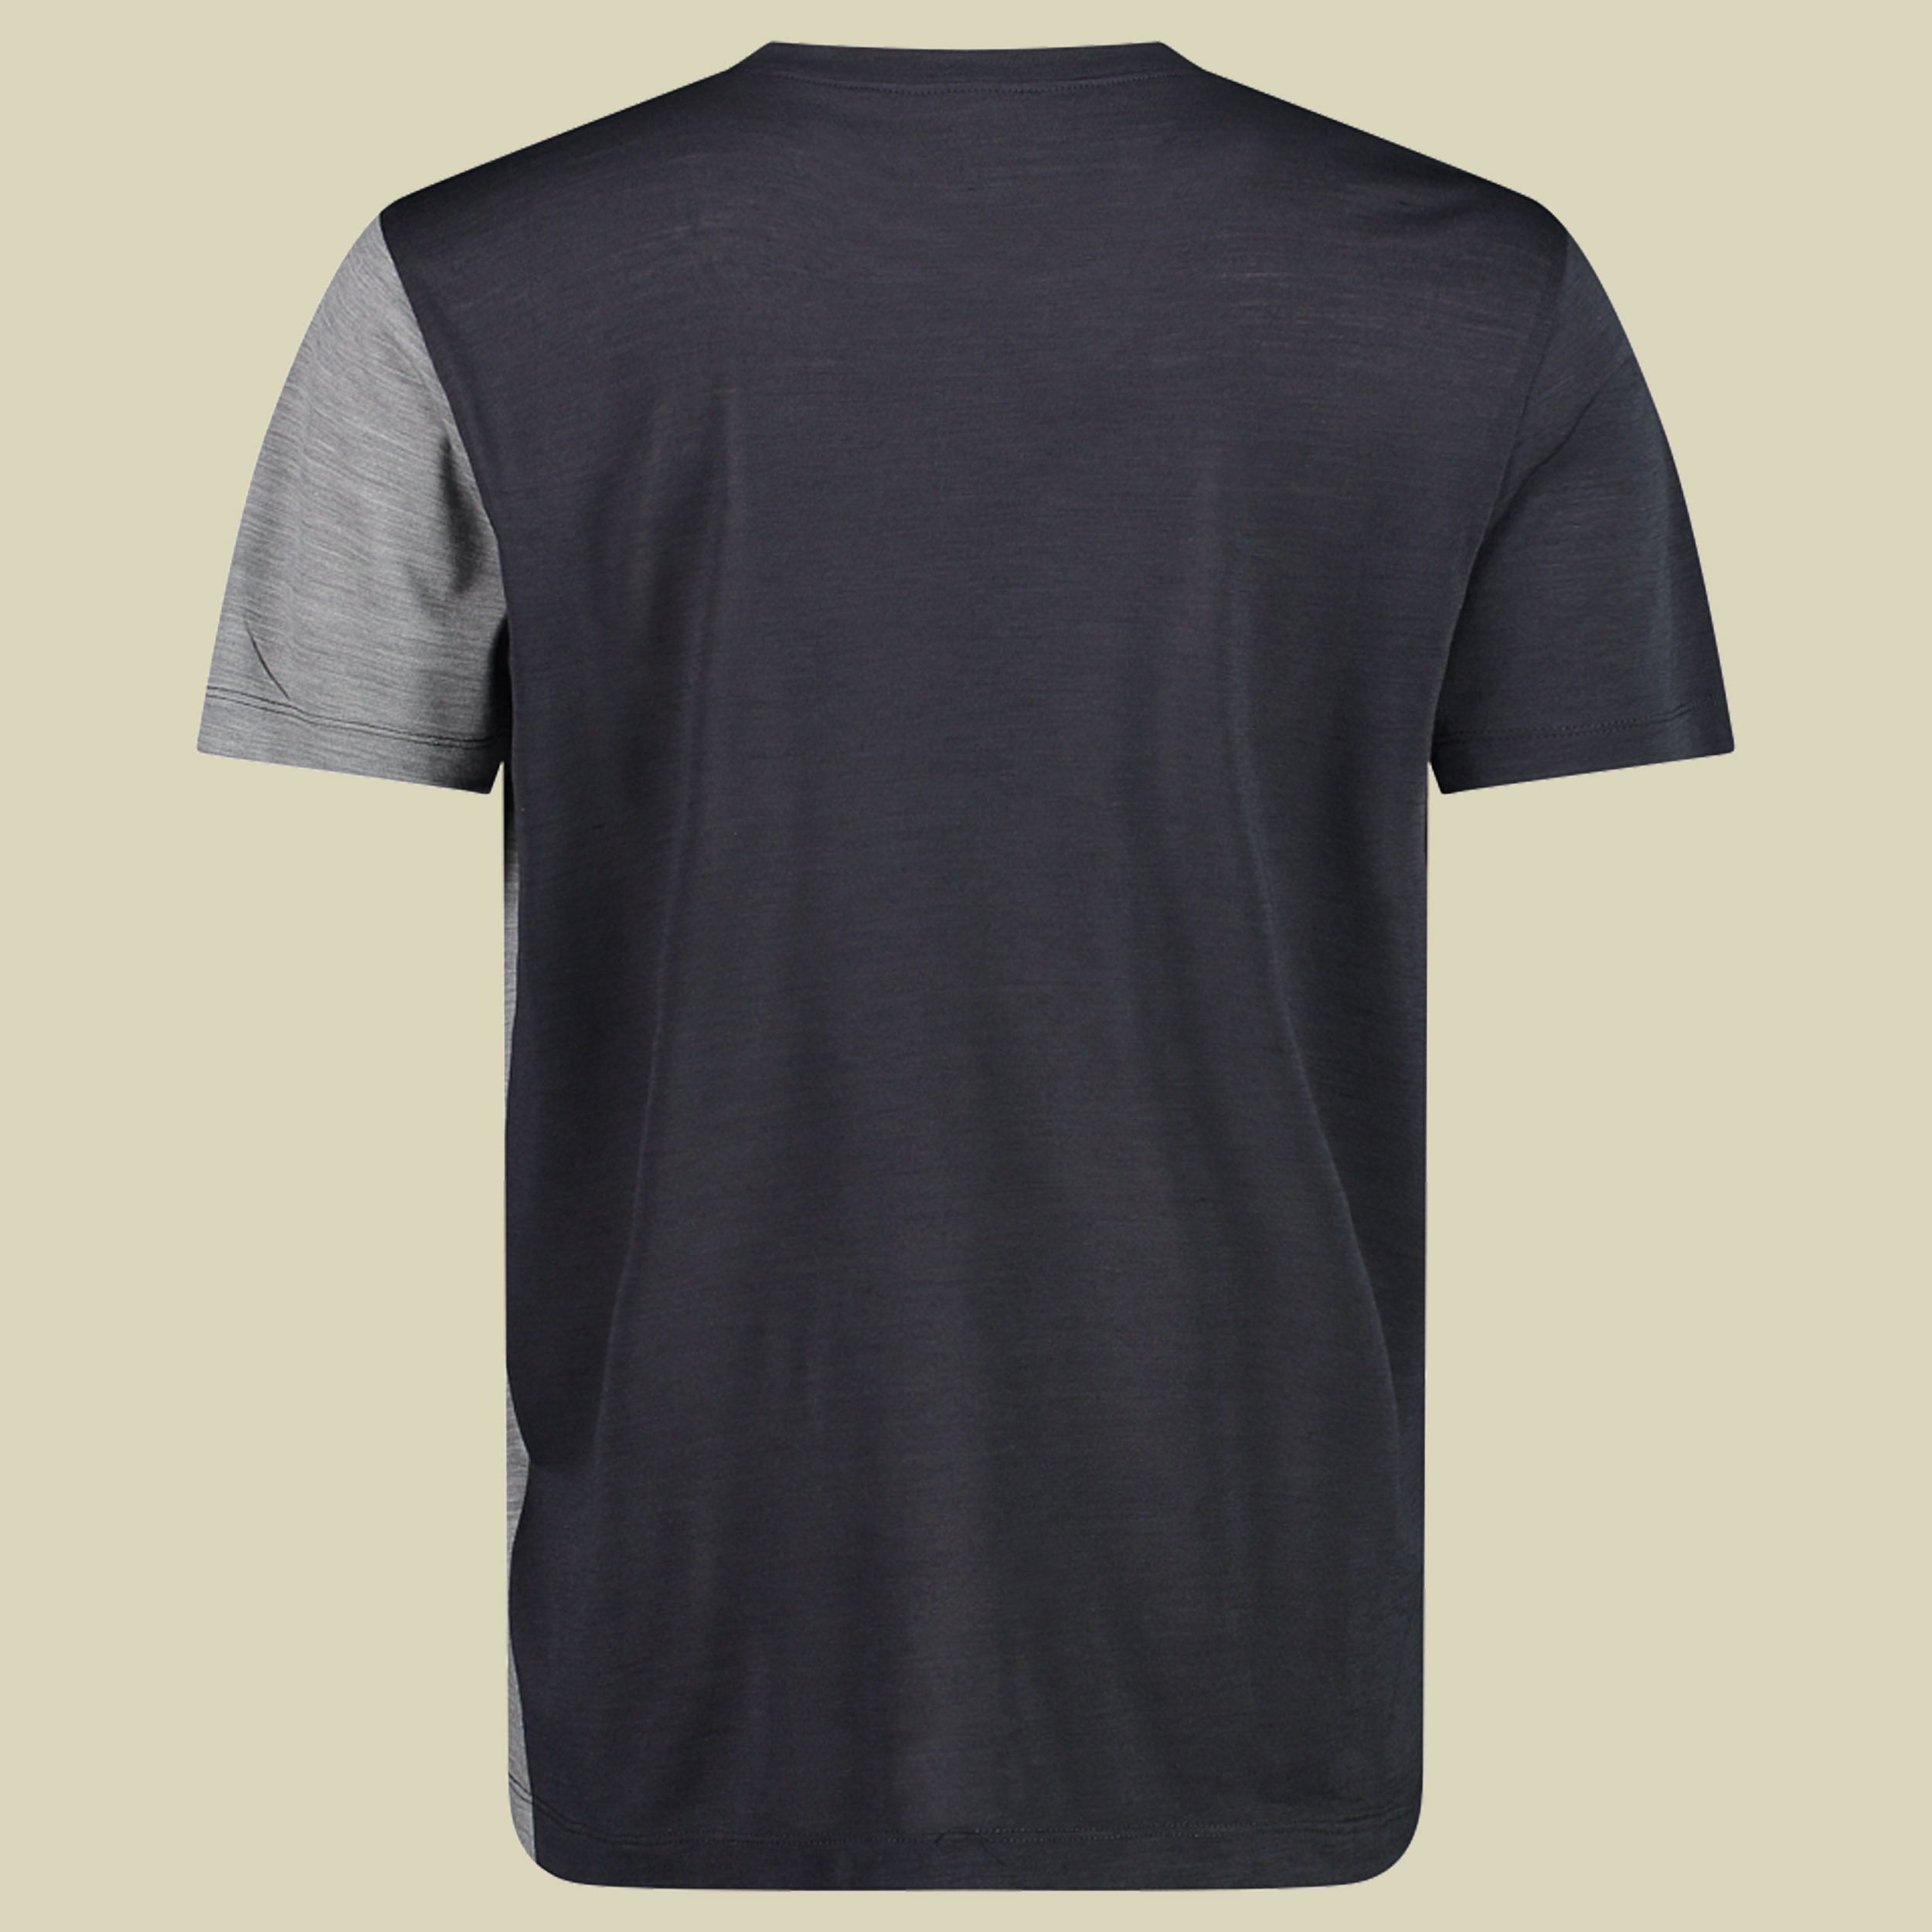 Man T-Shirt 33N5537 Größe 52 Farbe U423 antracite